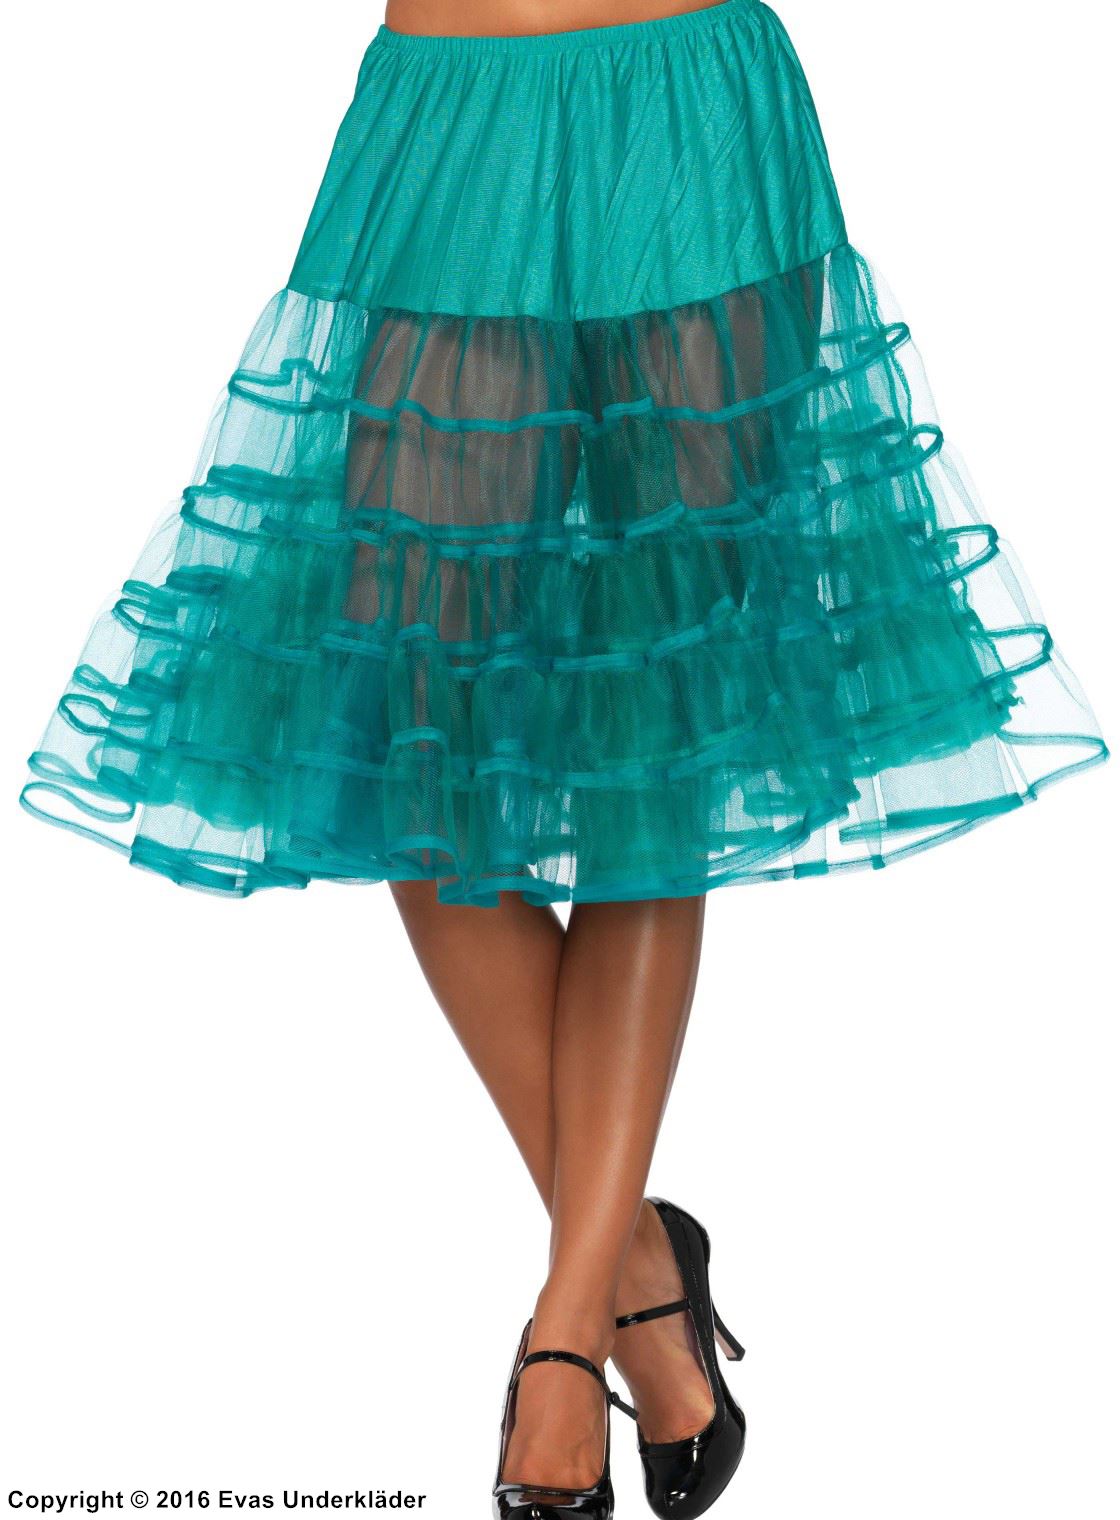 Petticoat, transparente Einlagen, Rüschen aus Mesh